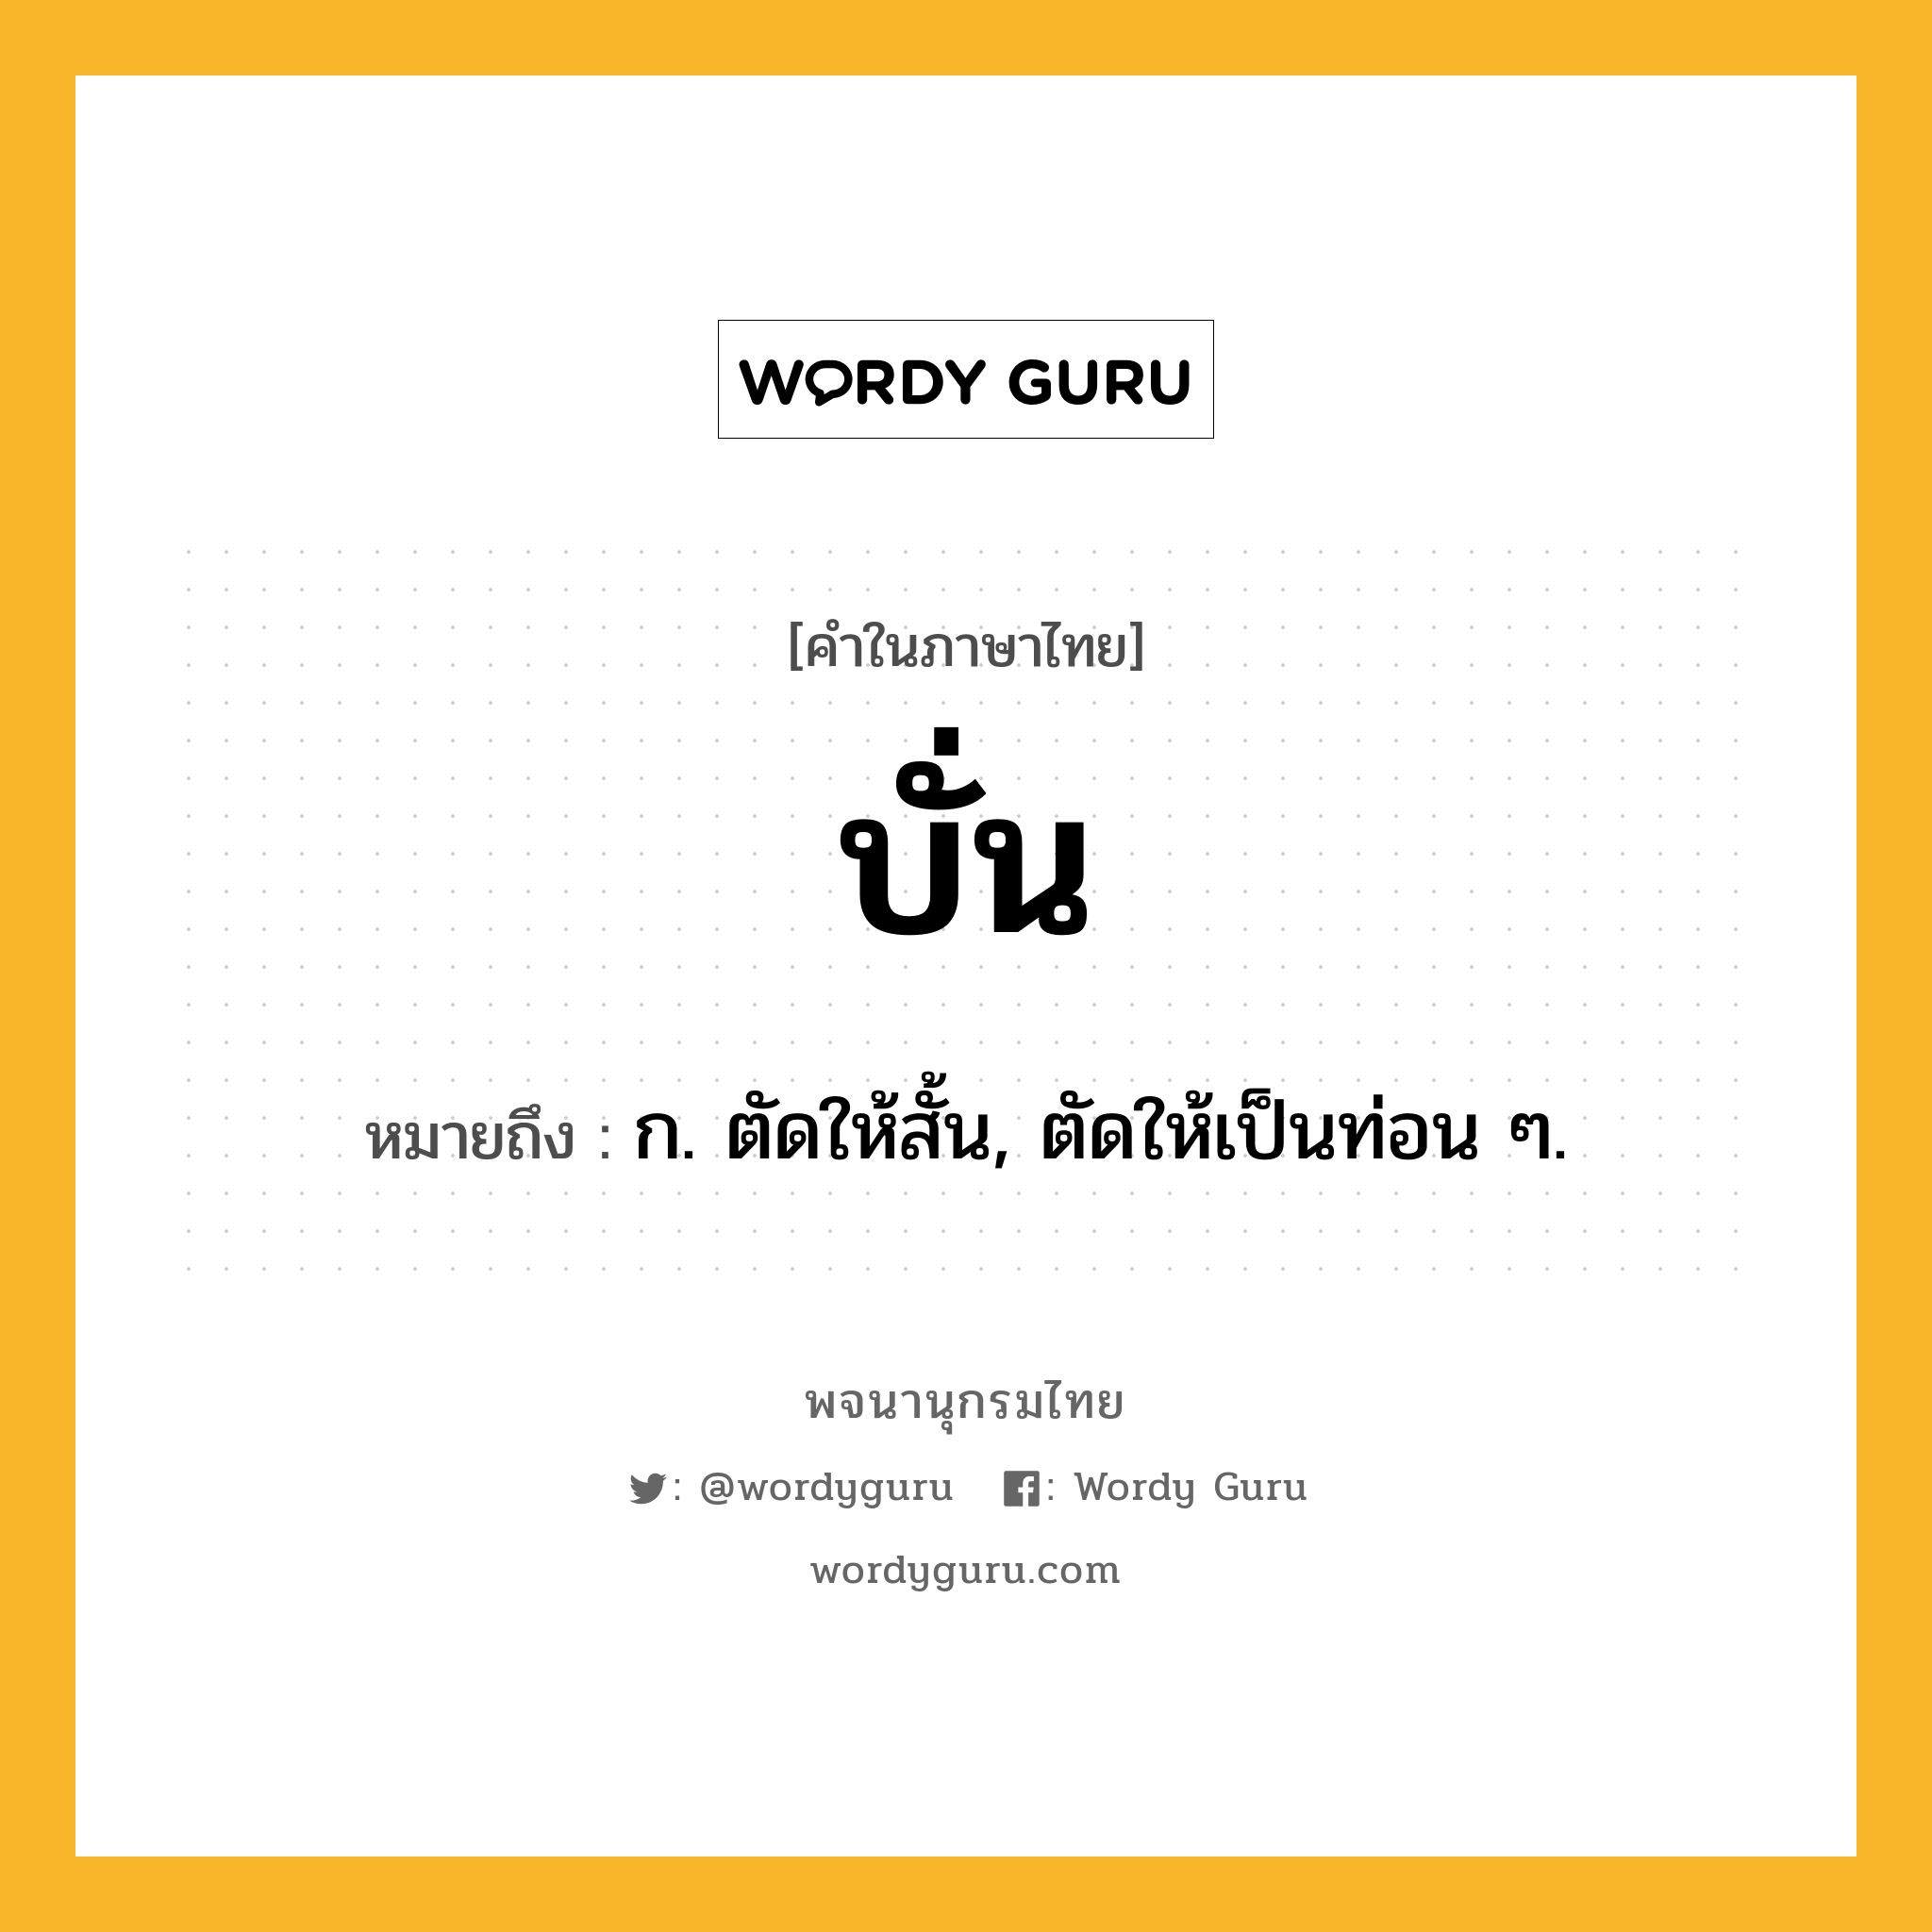 บั่น ความหมาย หมายถึงอะไร?, คำในภาษาไทย บั่น หมายถึง ก. ตัดให้สั้น, ตัดให้เป็นท่อน ๆ.